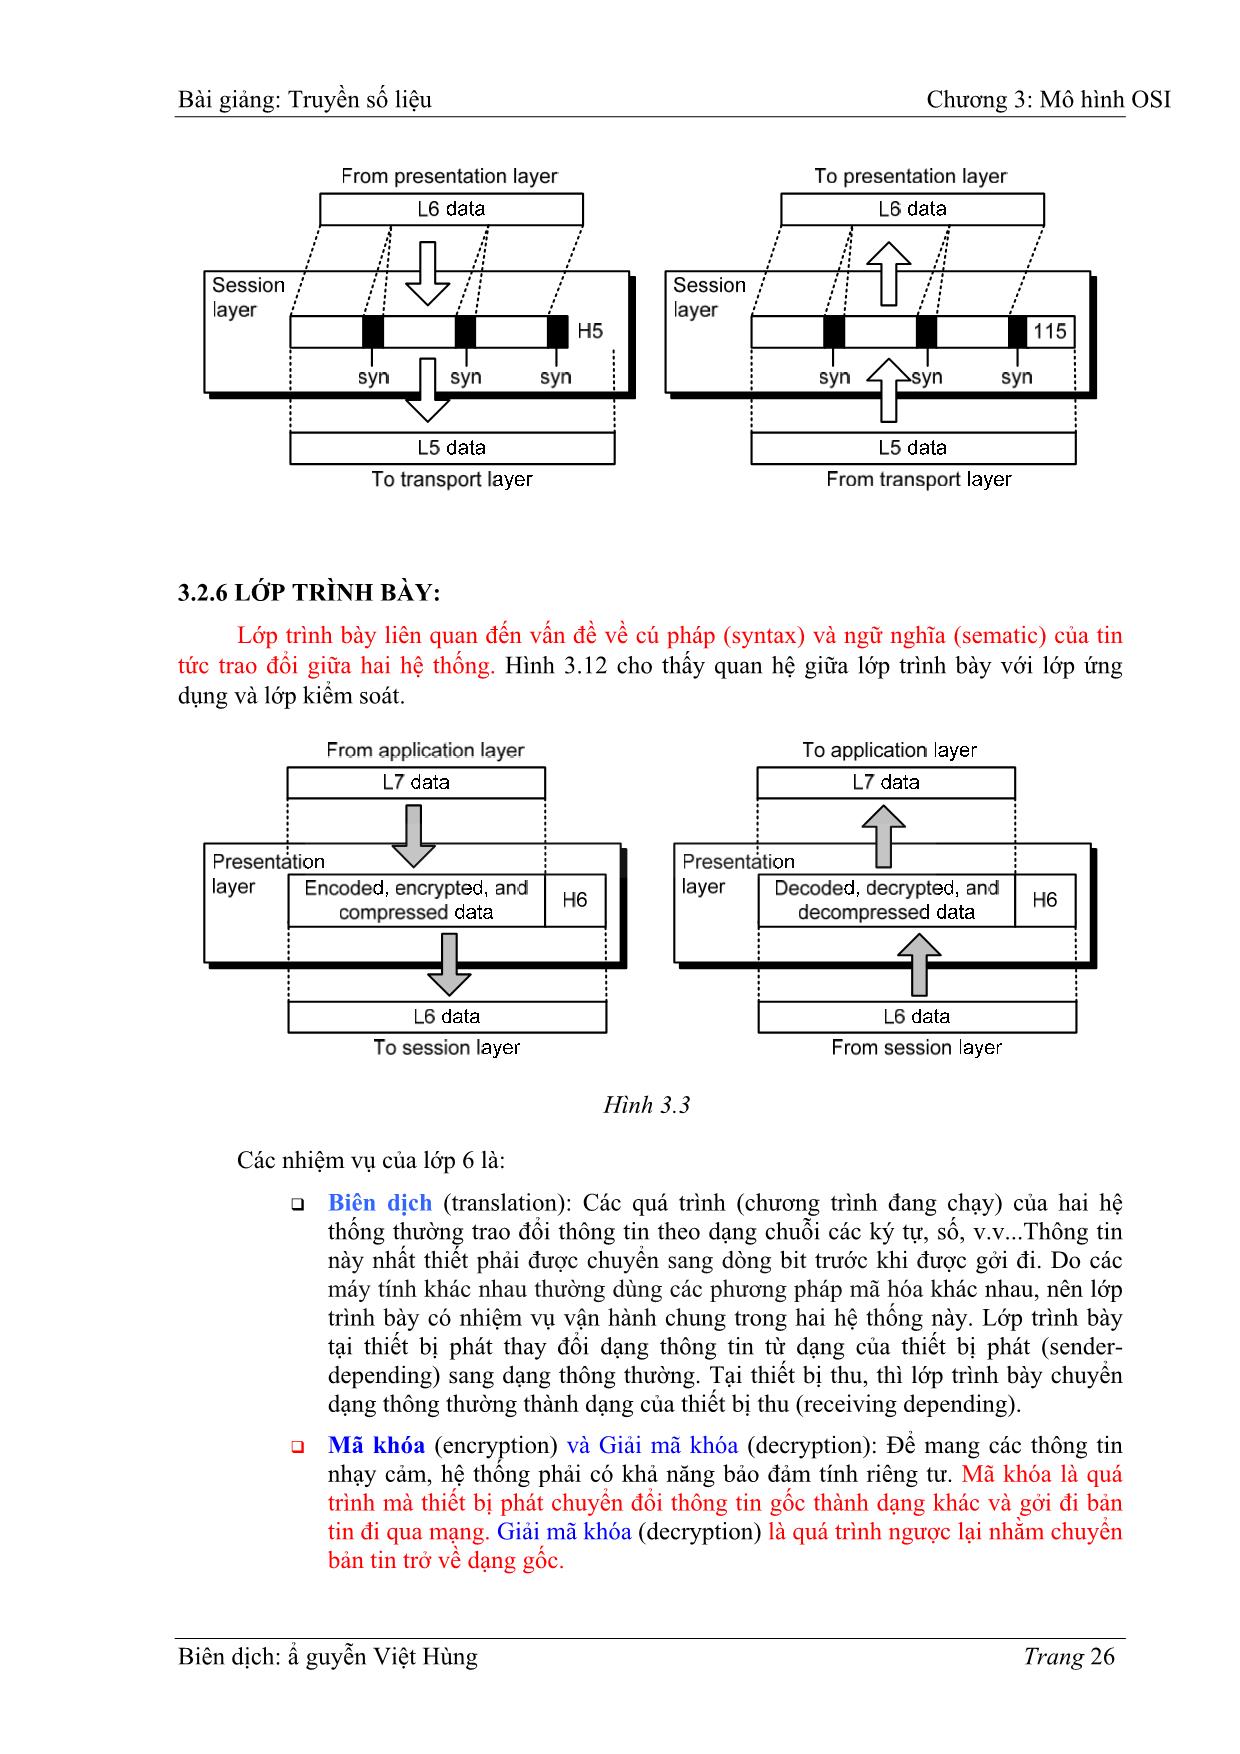 Bài giảng Truyền số liệu - Chương 3: Mô hình OIS - Nguyễn Việt Hùng trang 10